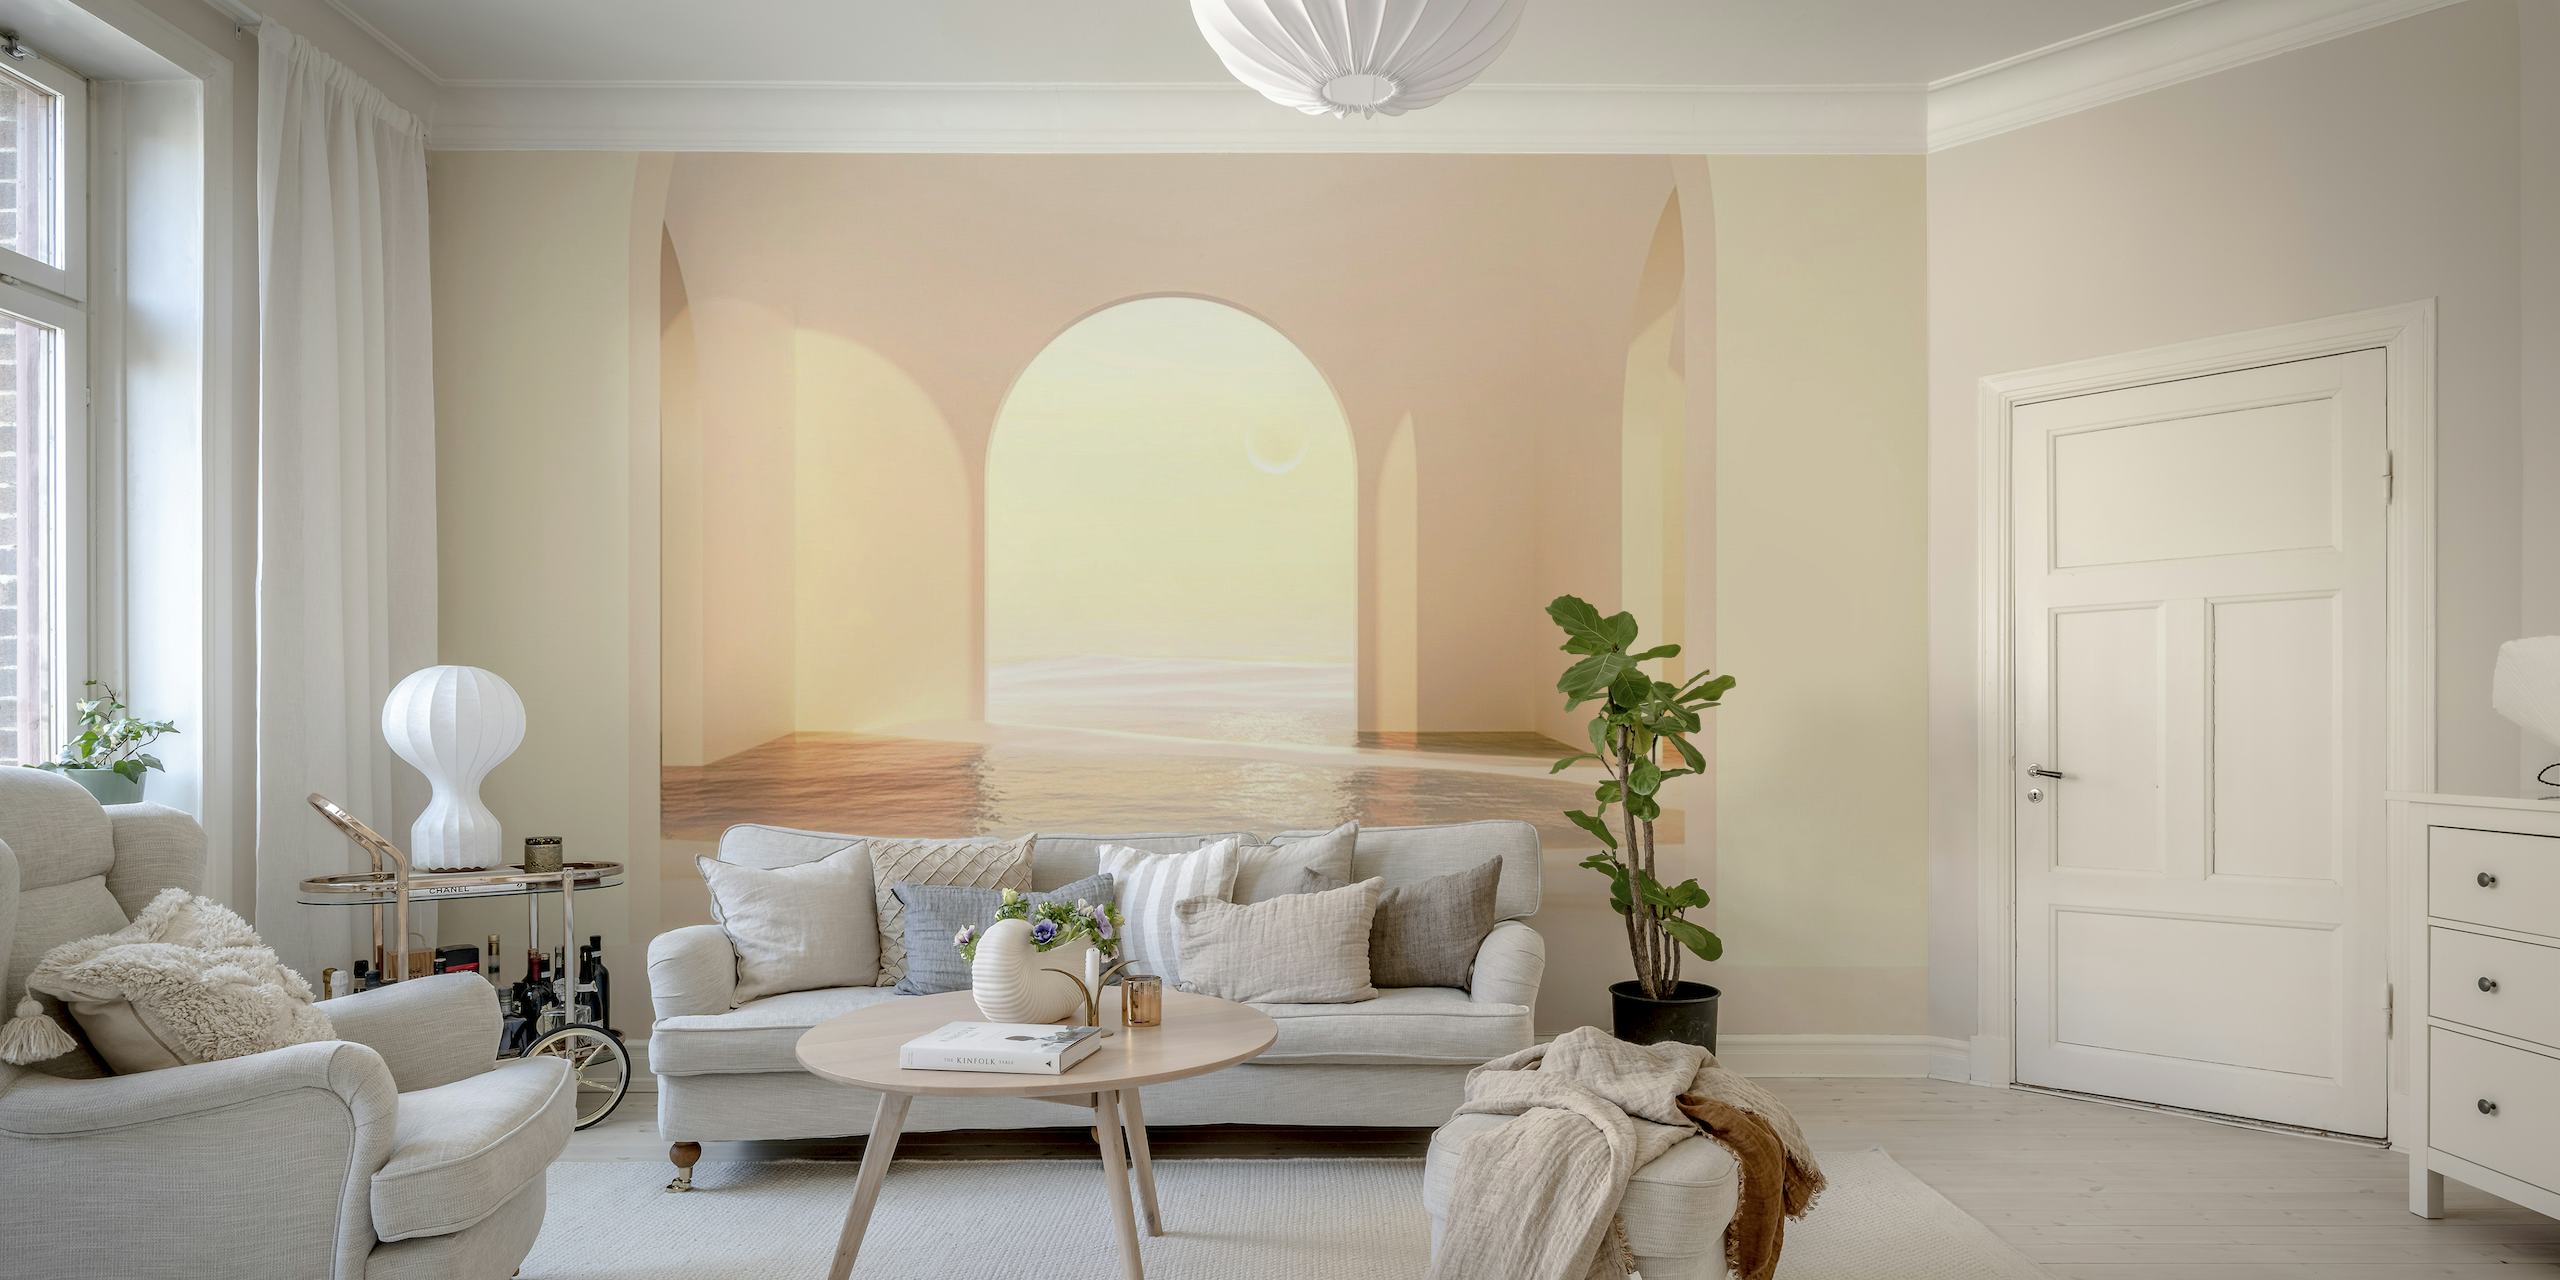 Elegante mural de pared en forma de arco con iluminación suave y cálidos tonos veraniegos.